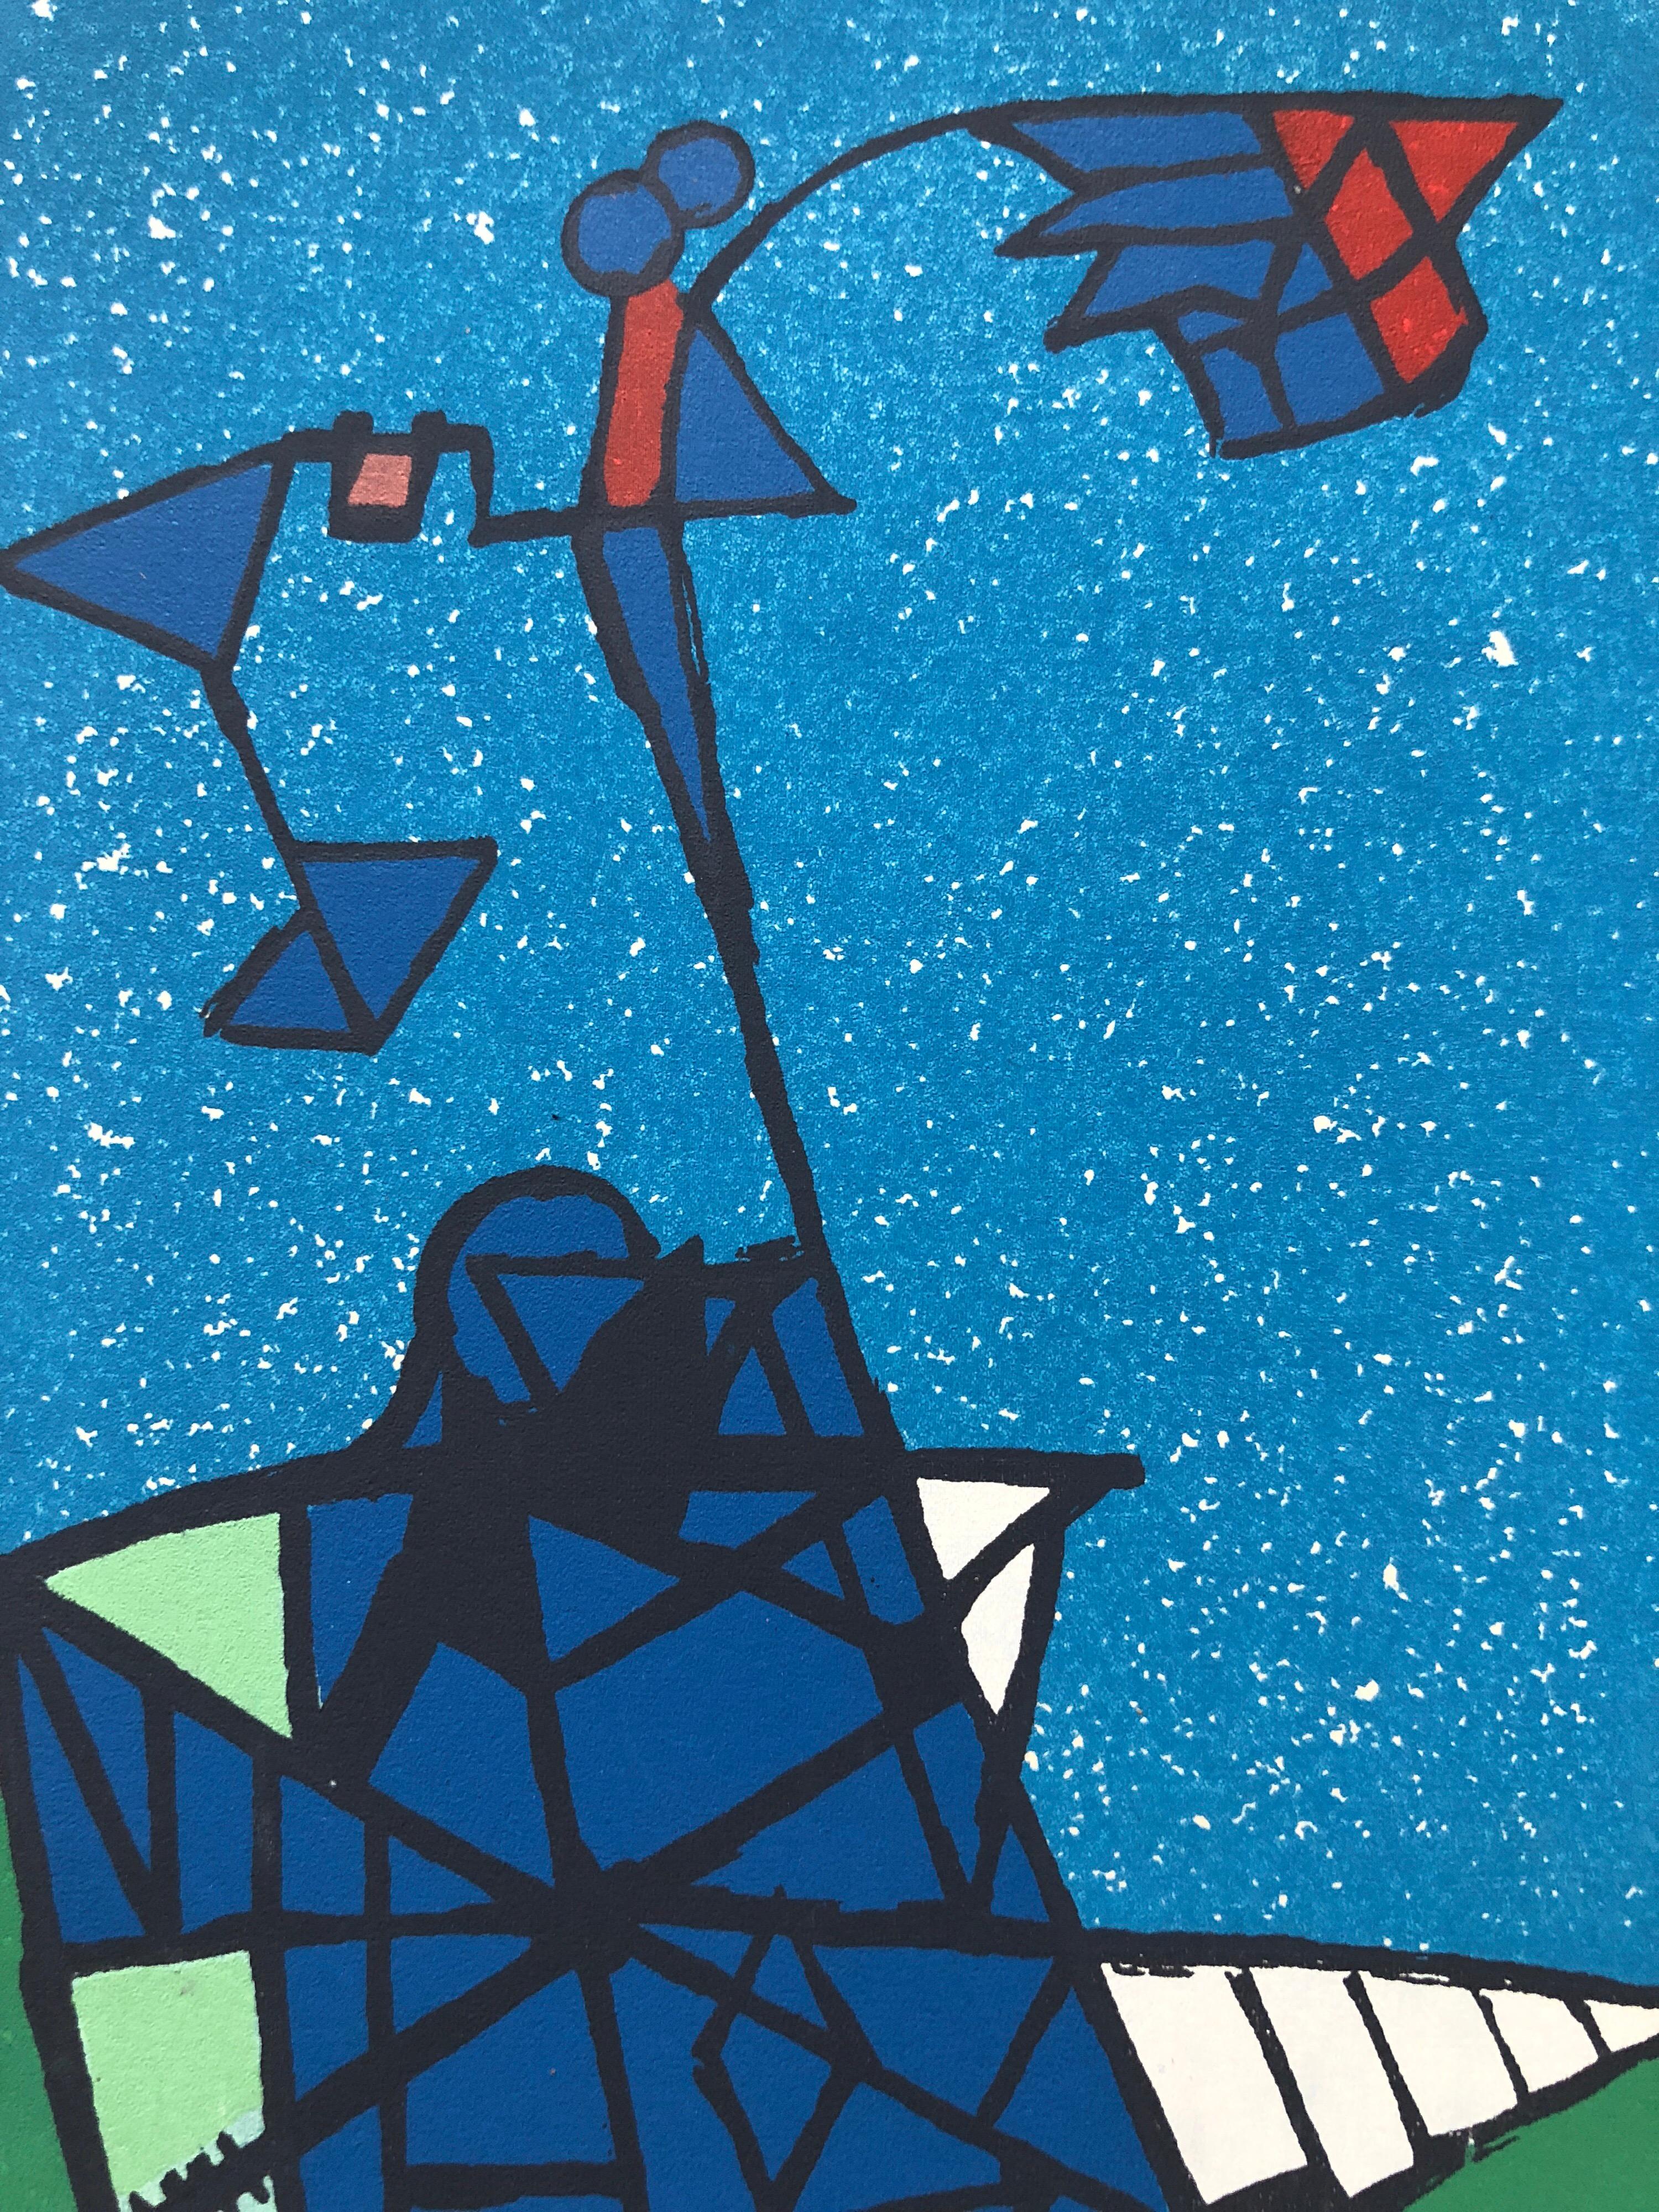 Sérigraphie sérigraphiée abstraite aux couleurs vives, signée à la main par l'artiste Cobra, années 1950 - Bleu Still-Life Print par Erling Jorgensen